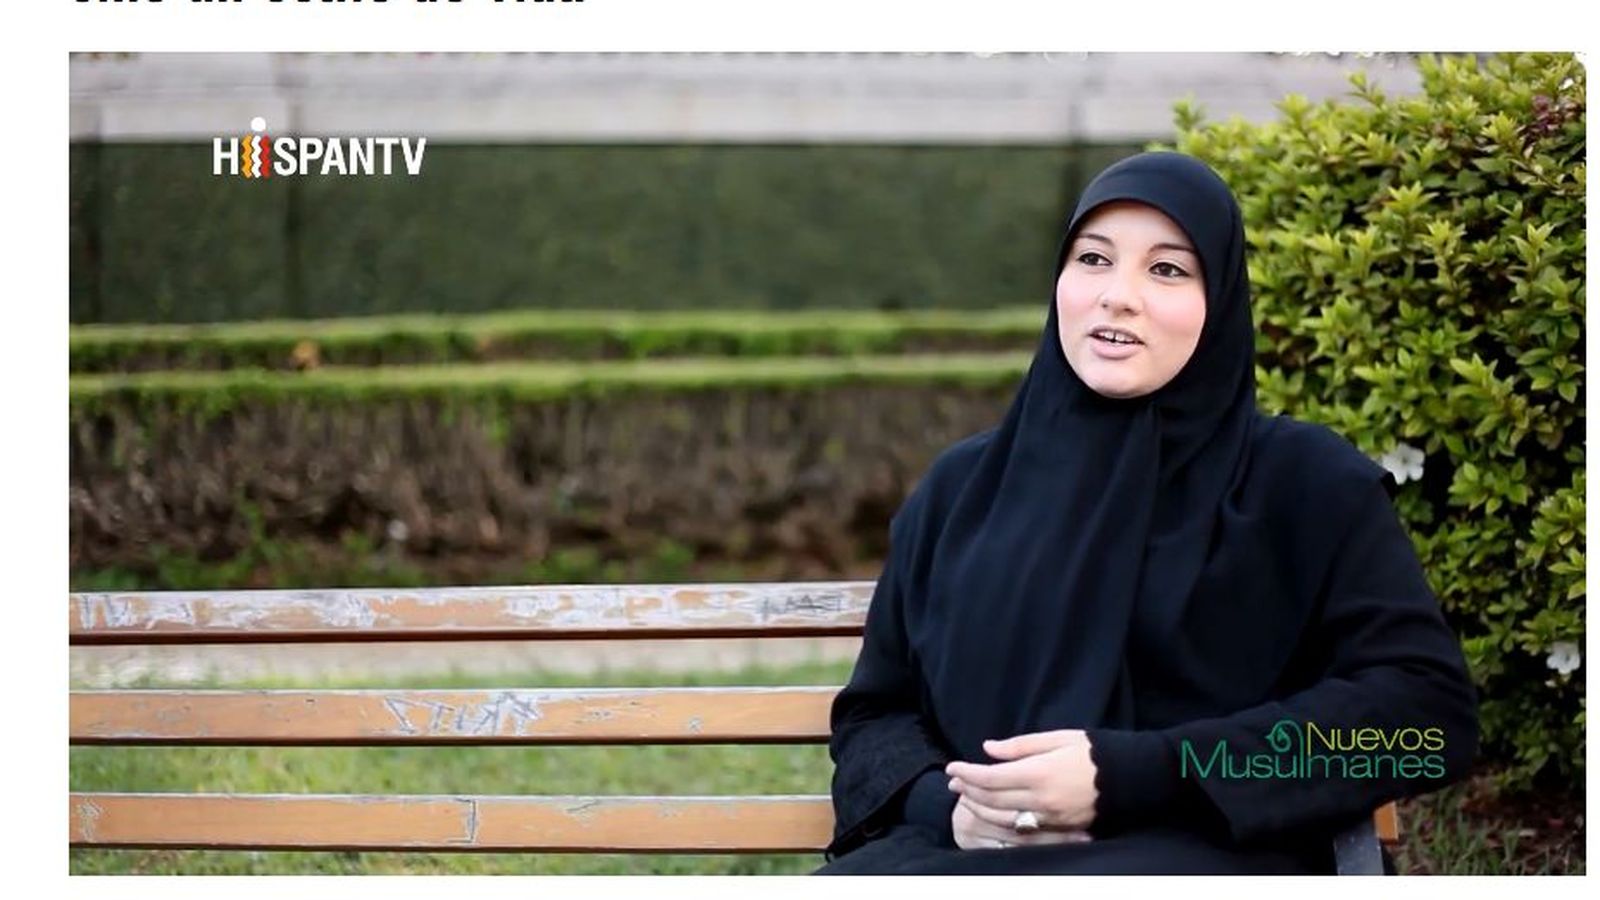 Foto: Imagen de 'Nuevos musulmanes', uno de los programas de Hispan TV.